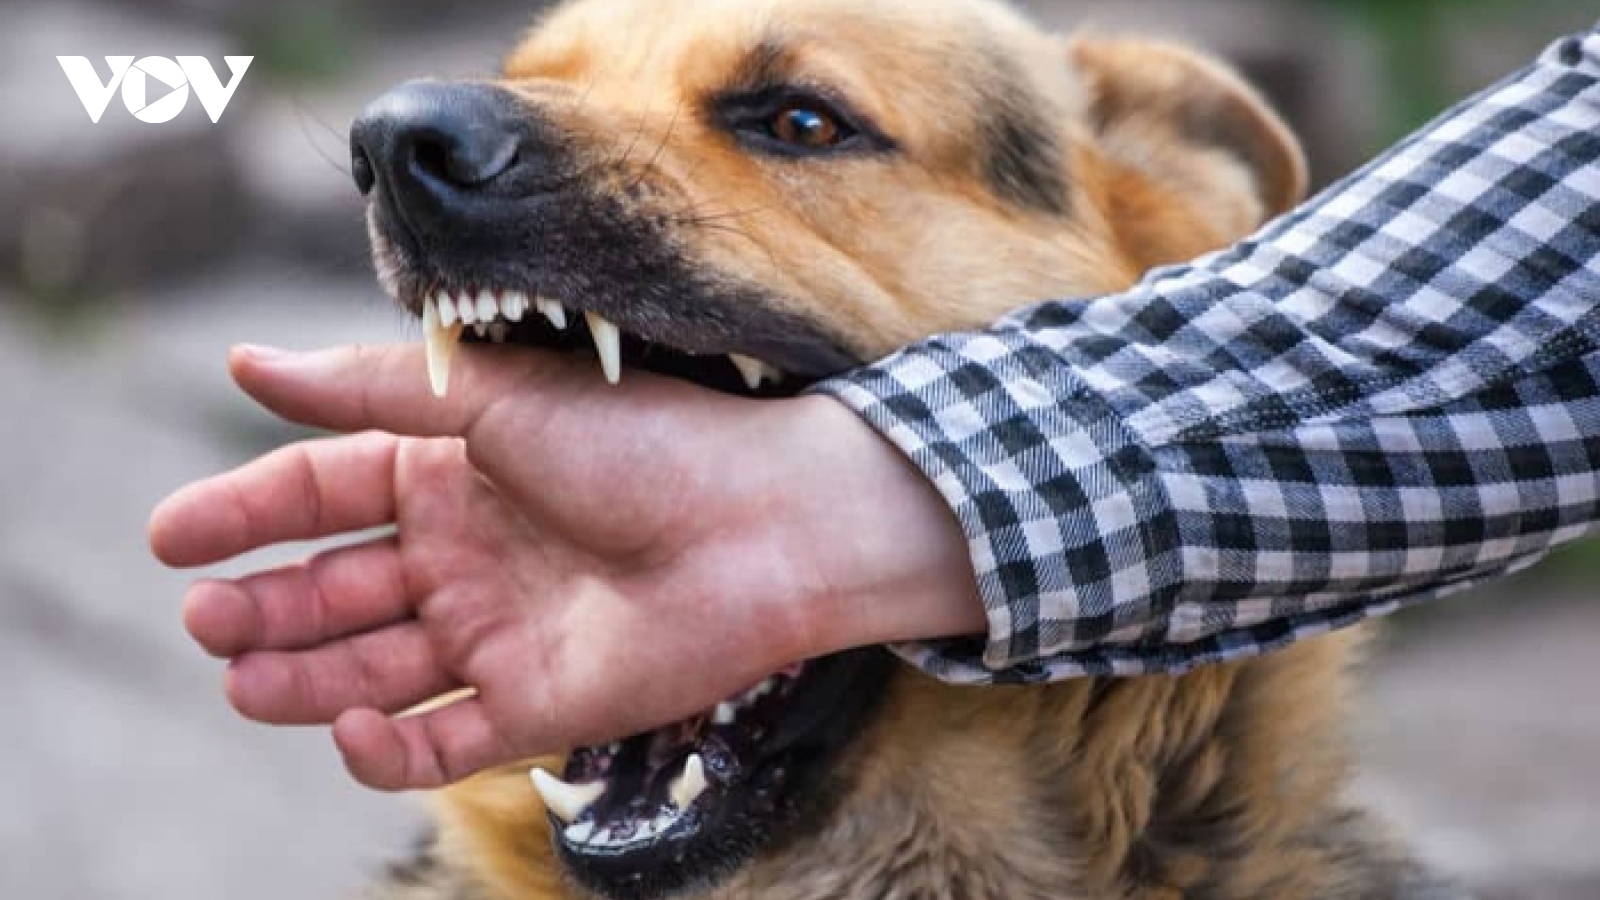 Báo động về tình trạng chó dại cắn người ở Phú Yên